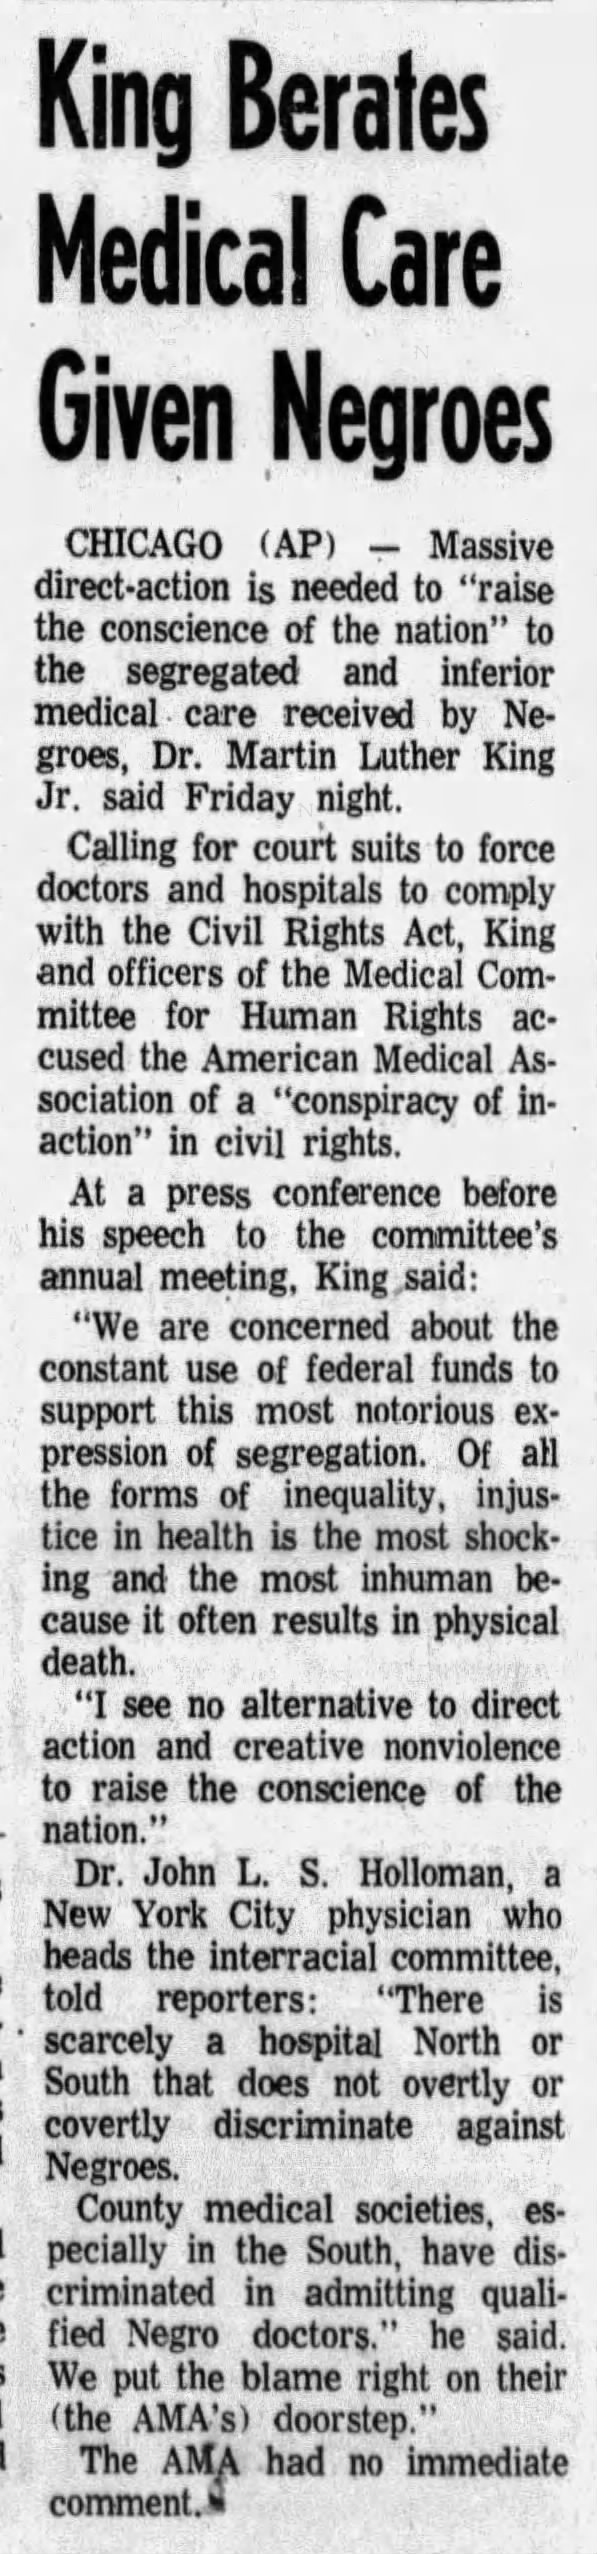 Oshkosh Daily Northwestern, 3/26/66